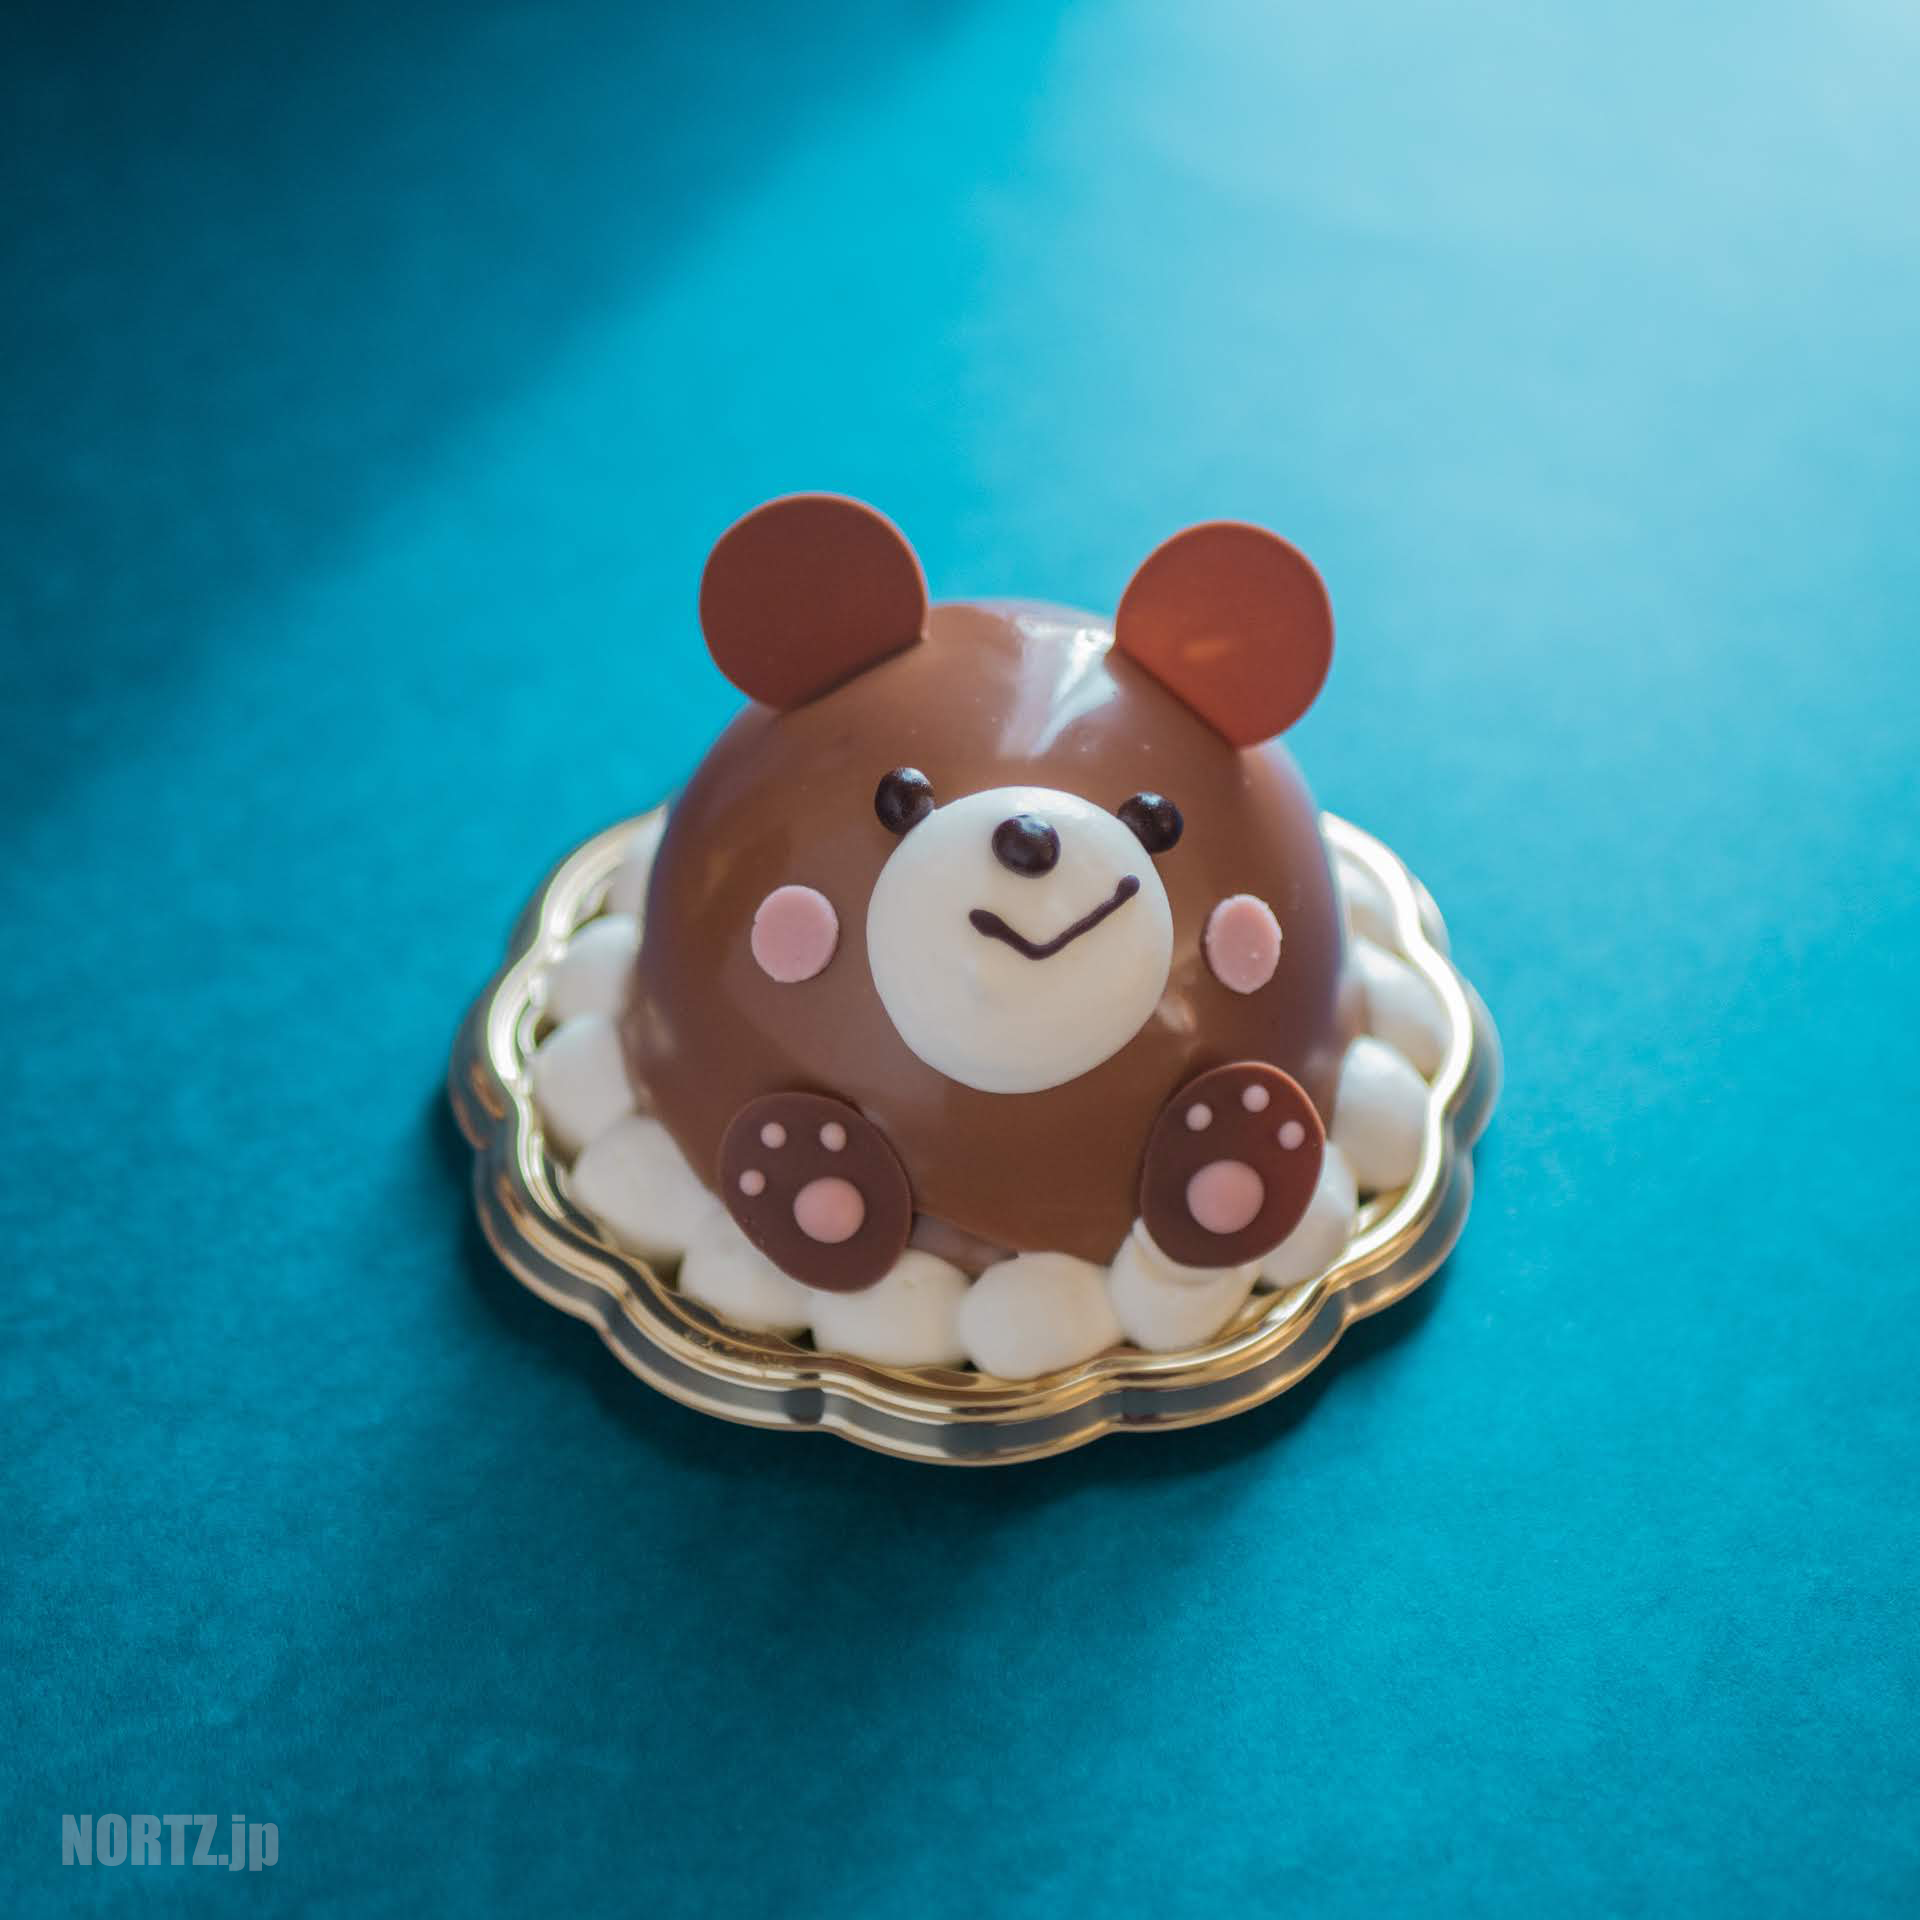 夢を描くお菓子屋さんパレット｜札幌真駒内でプレゼントにもおすすめな2段ホールケーキにアニマルケーキも